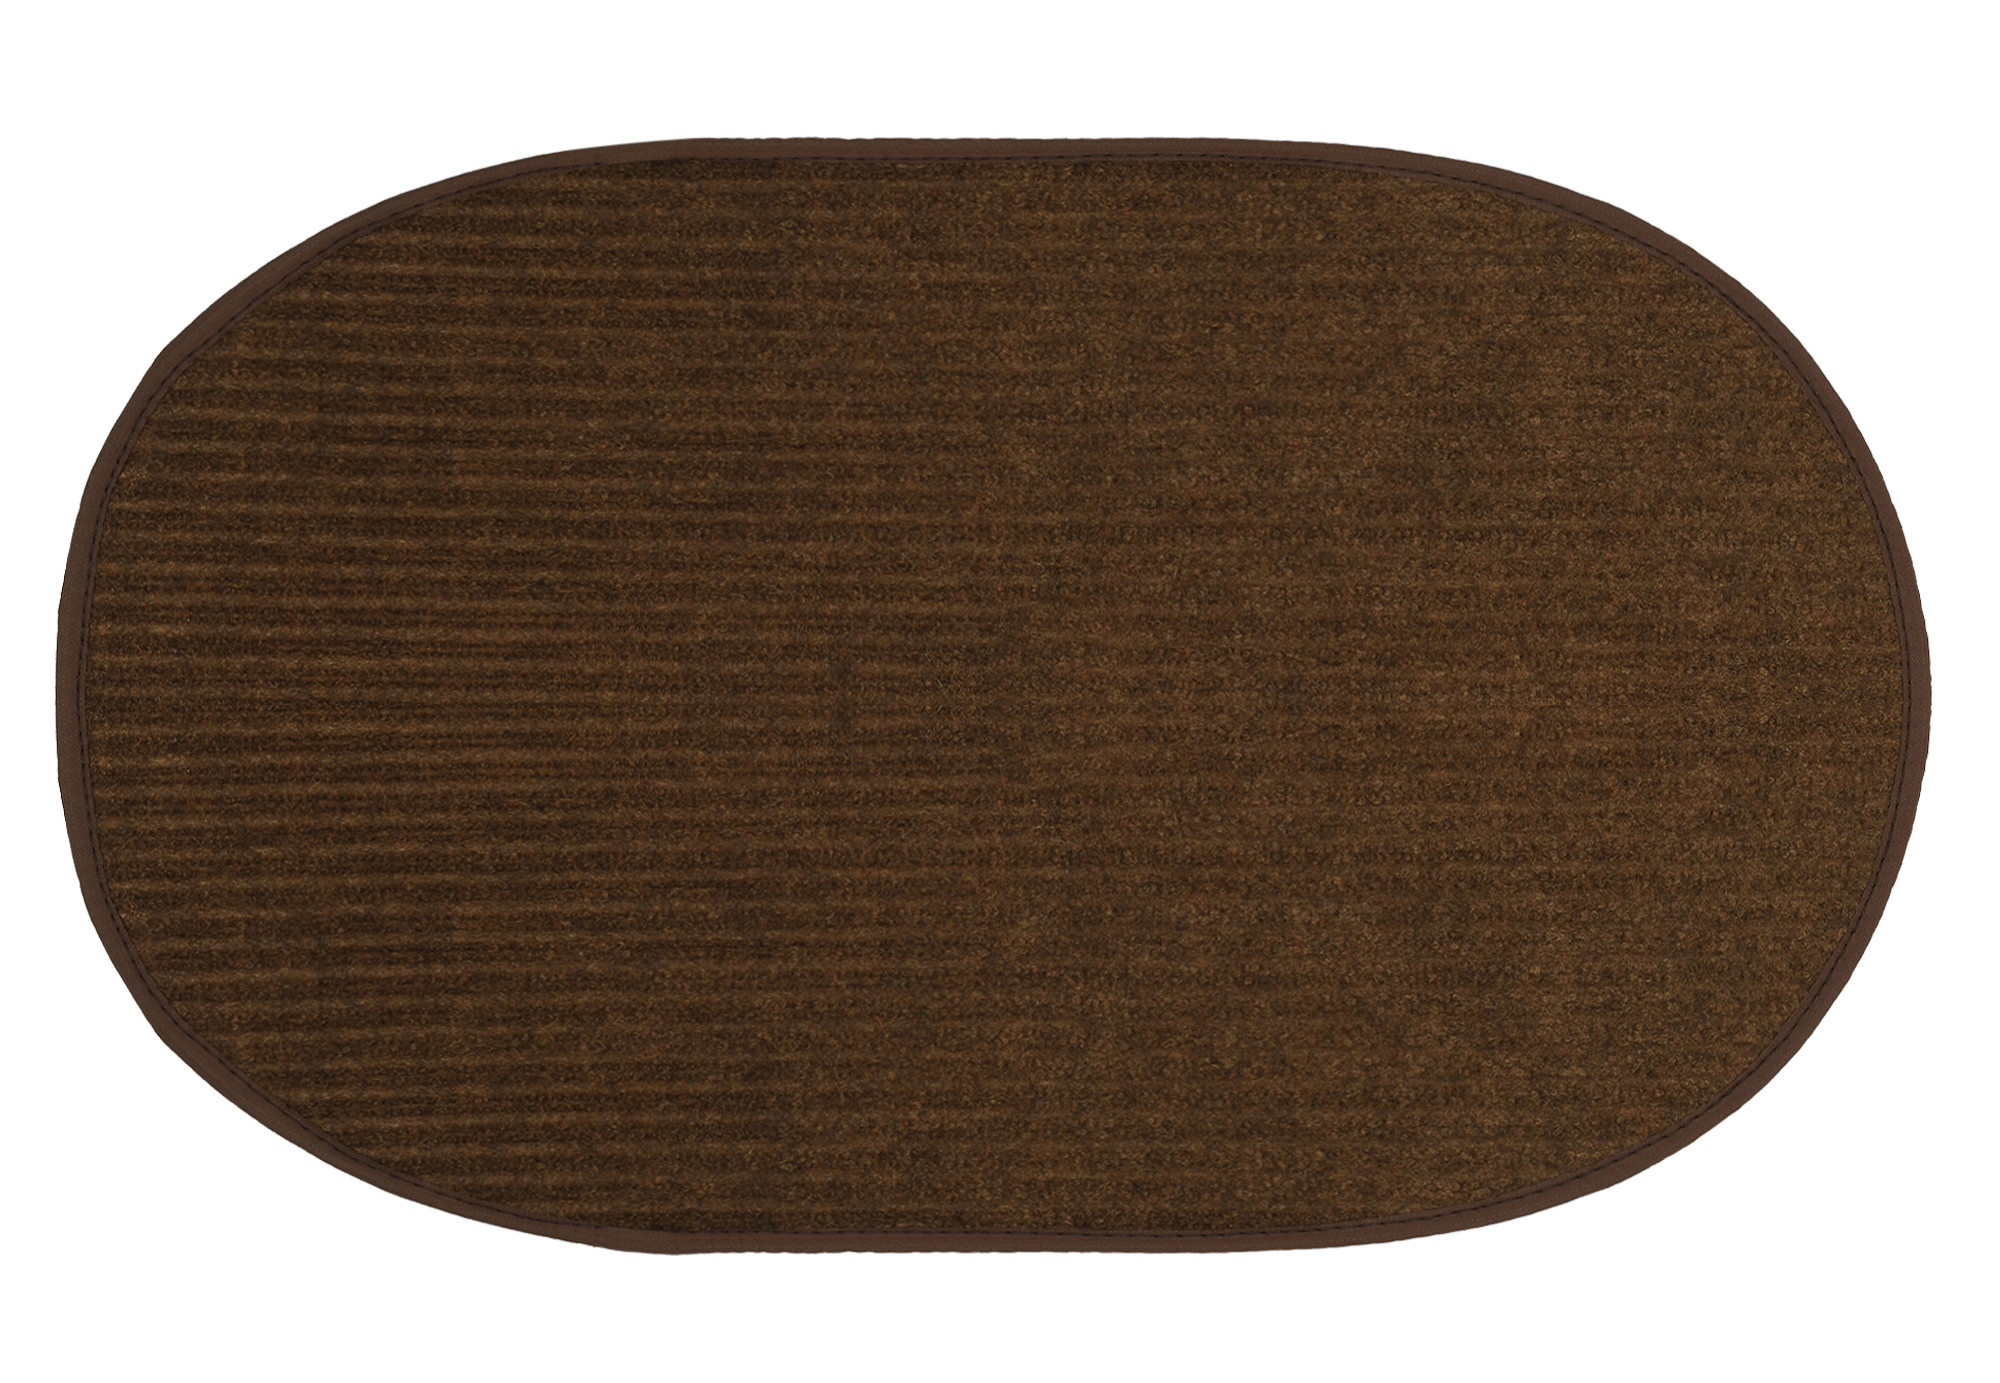 Kuber Industries Oval Shape Durable Microfiber Door Mat, Heavy Duty Doormat, Indoor Outdoor, Easy Clean, Waterproof, Low-Profile Mats for Entry, Patio, Garage (Set Of 2,14'' x 23'',Maroon & Brown)-KUBMRT12113